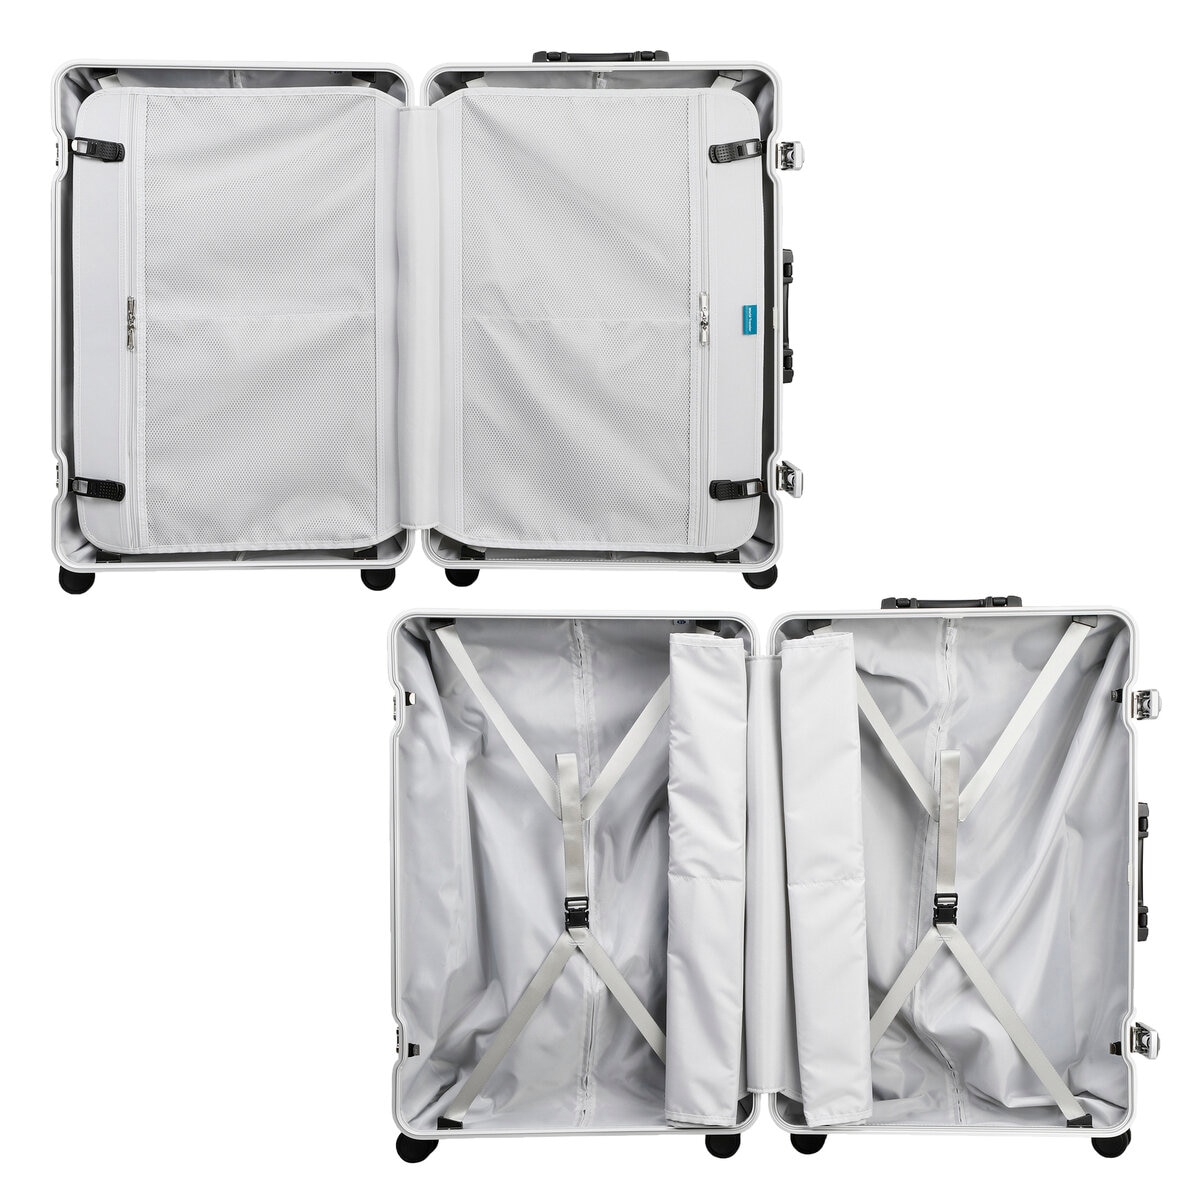 ACE ワールドトラベラー エラコール スーツケース 機内持ち込みサイズ  32L  0409614  オレンジ